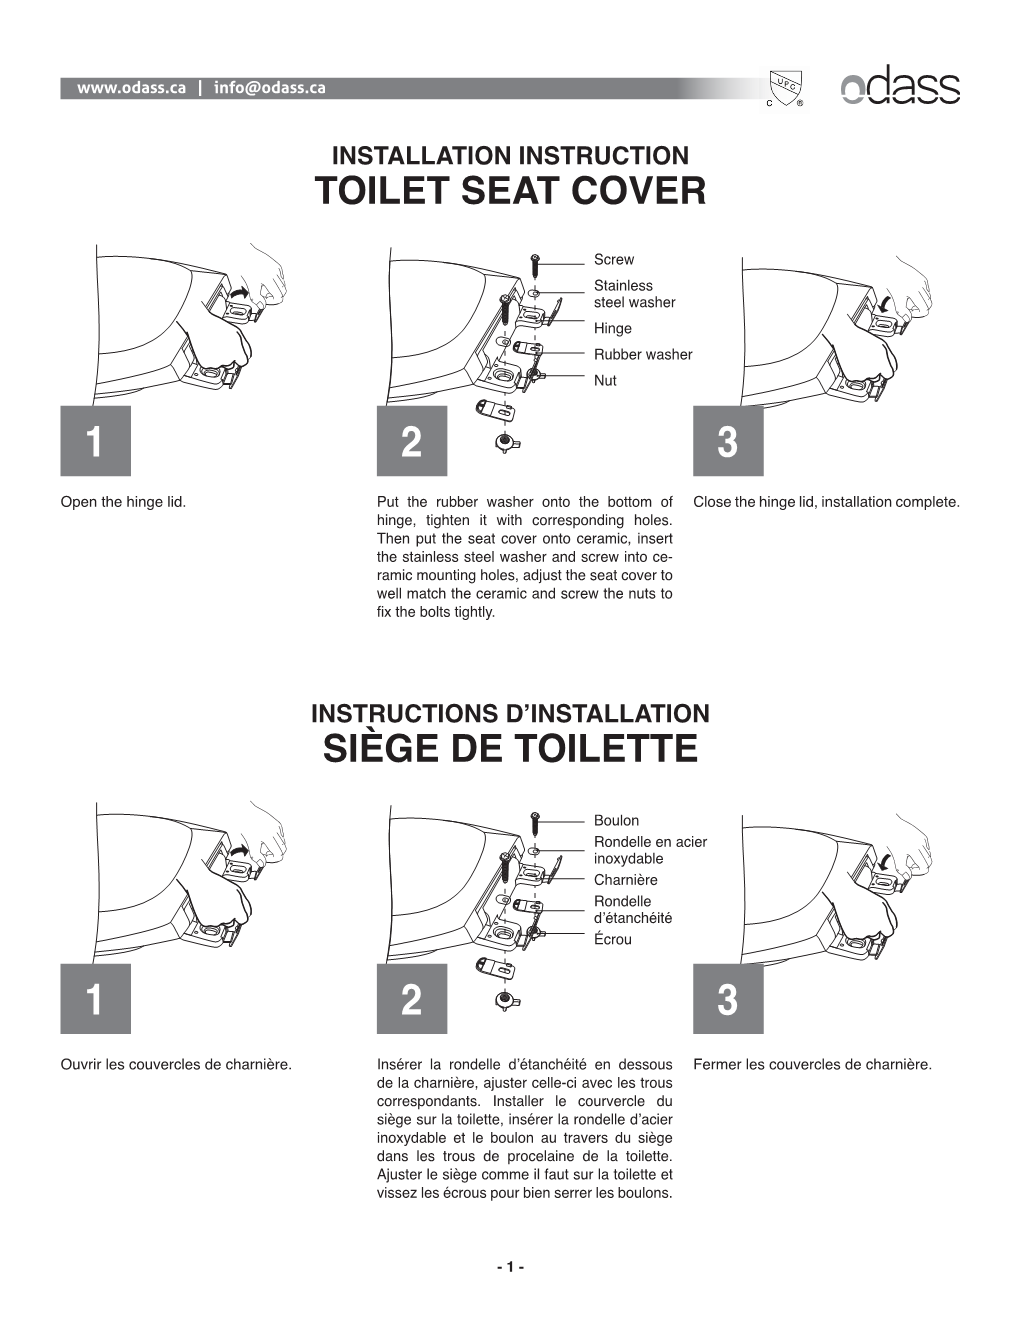 Toilet Seat Cover Siège De Toilette